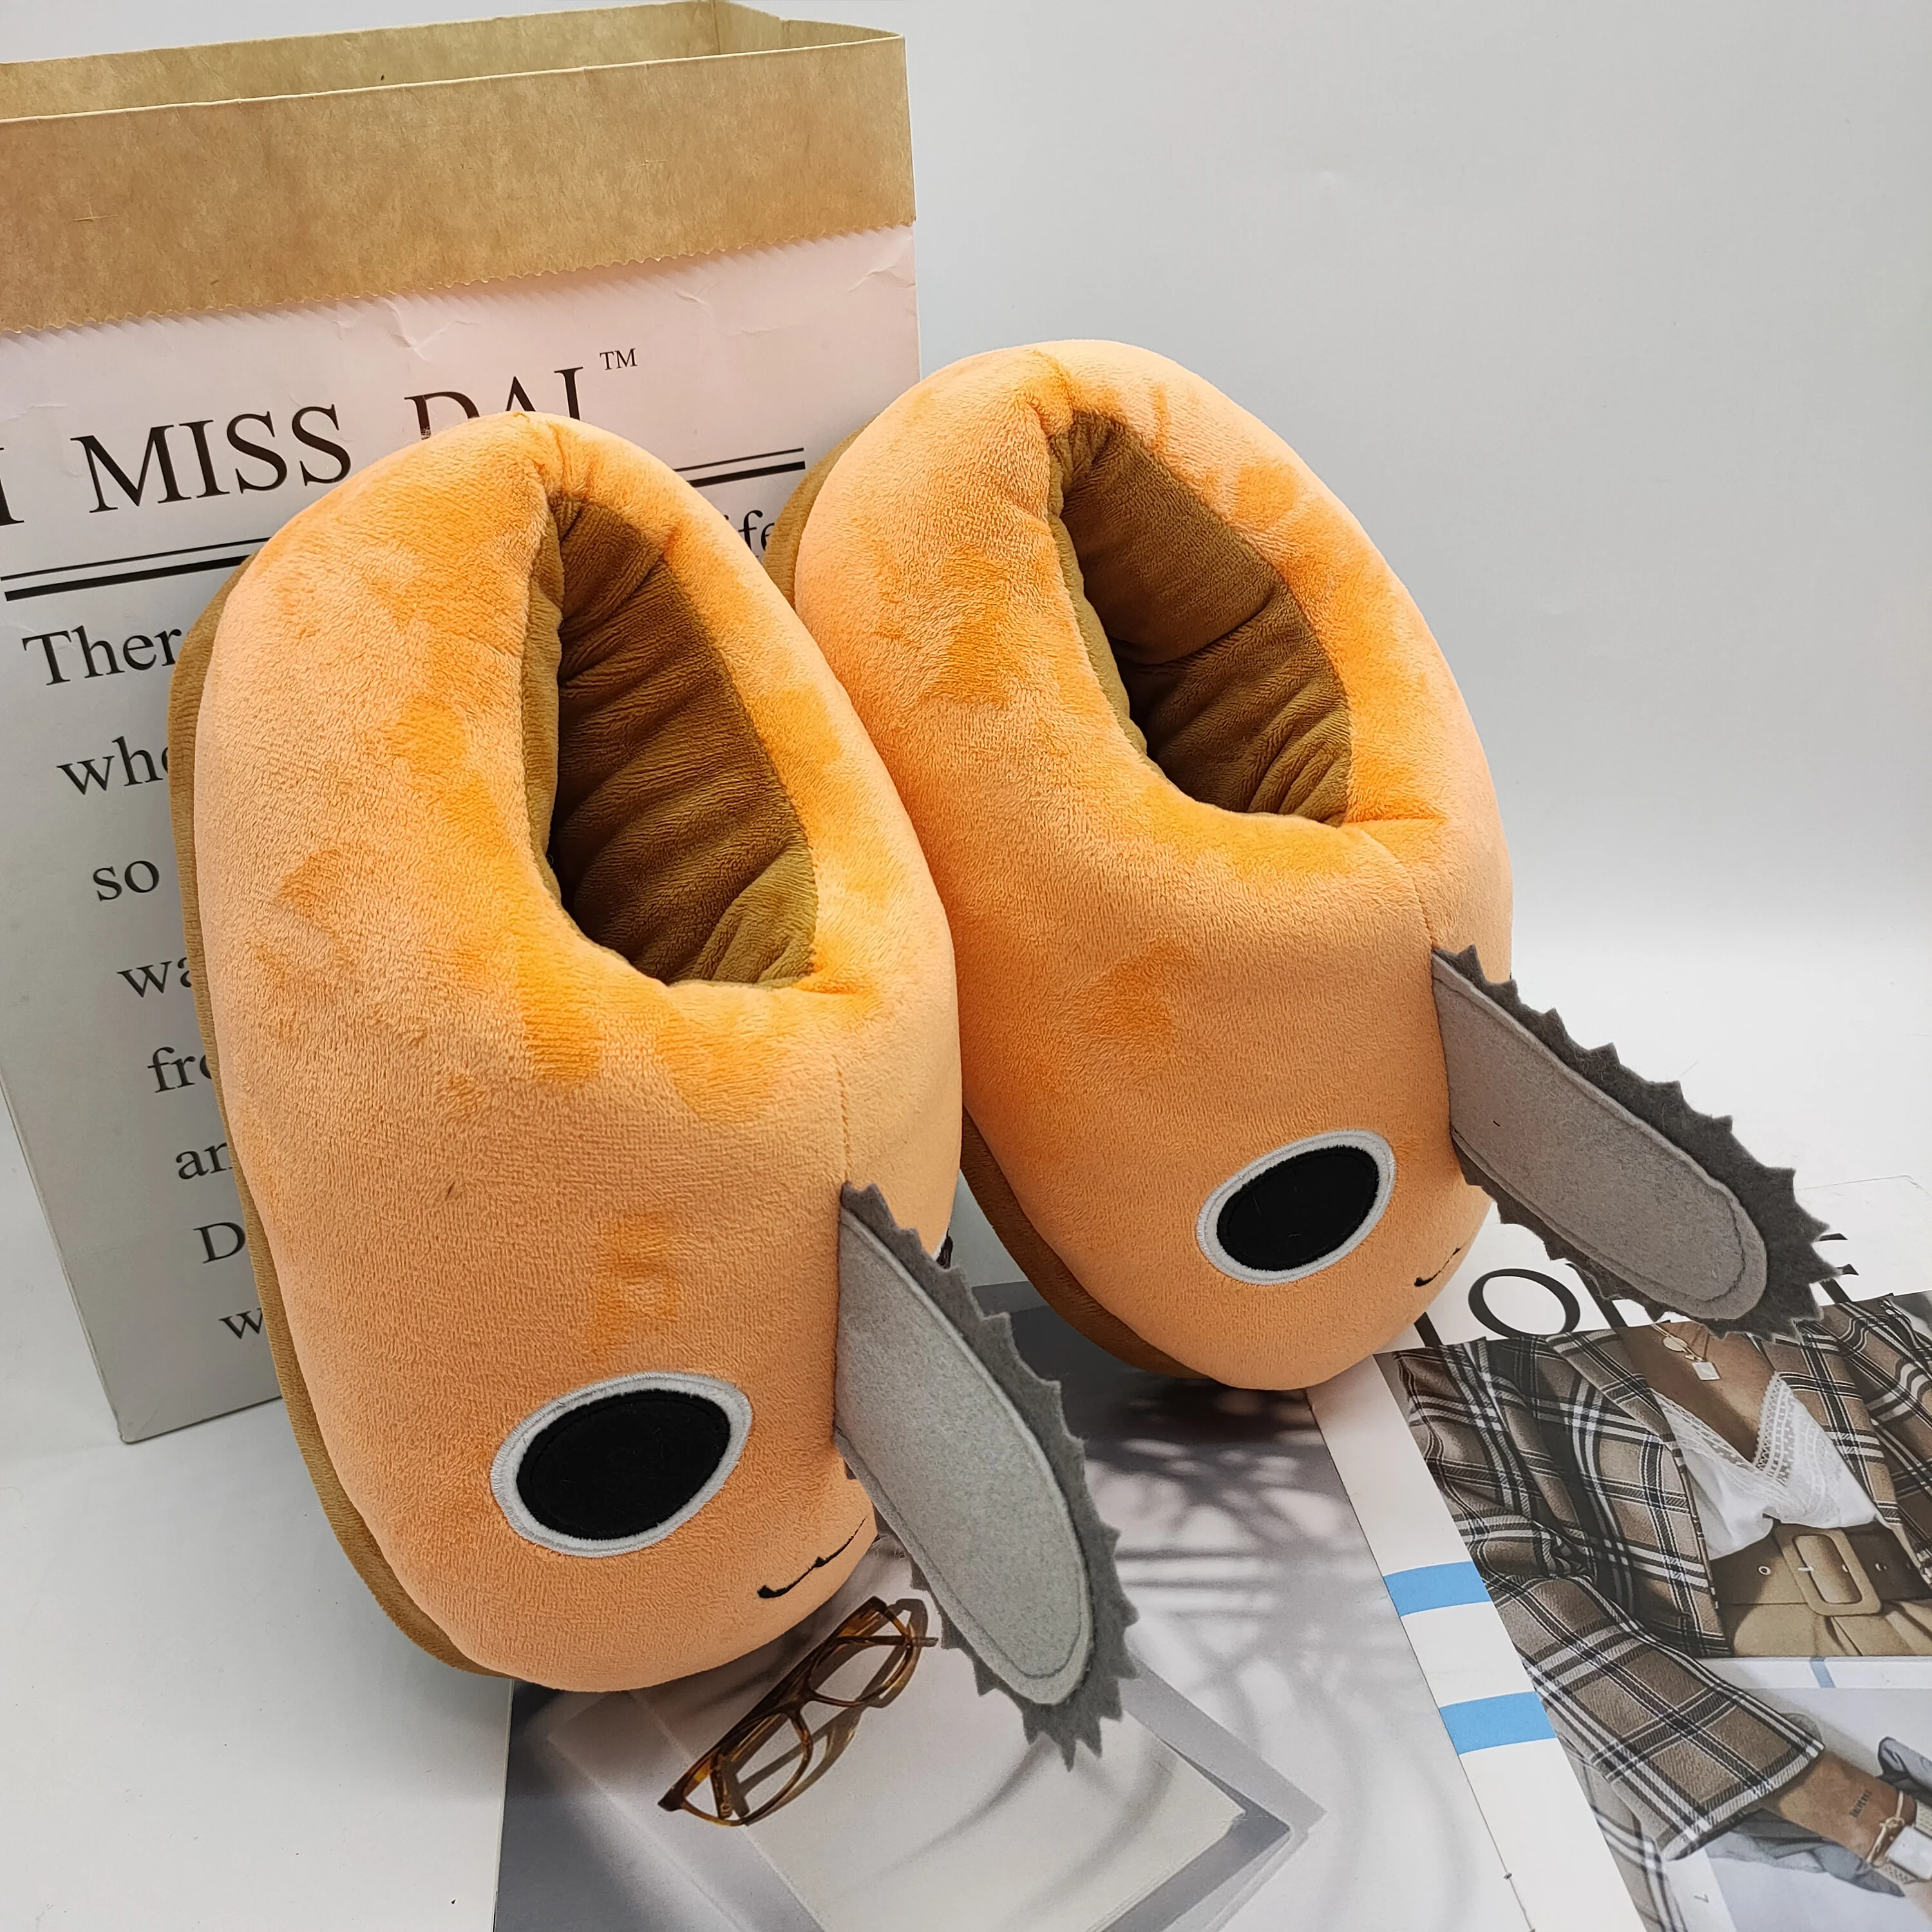 Chainsaw Man Pochita Plush Slipper Pochita Peluche Chainsawman Shoes Anime Happy Orange Dog Stuffed Soft Toy Kawaii Plushie Gift